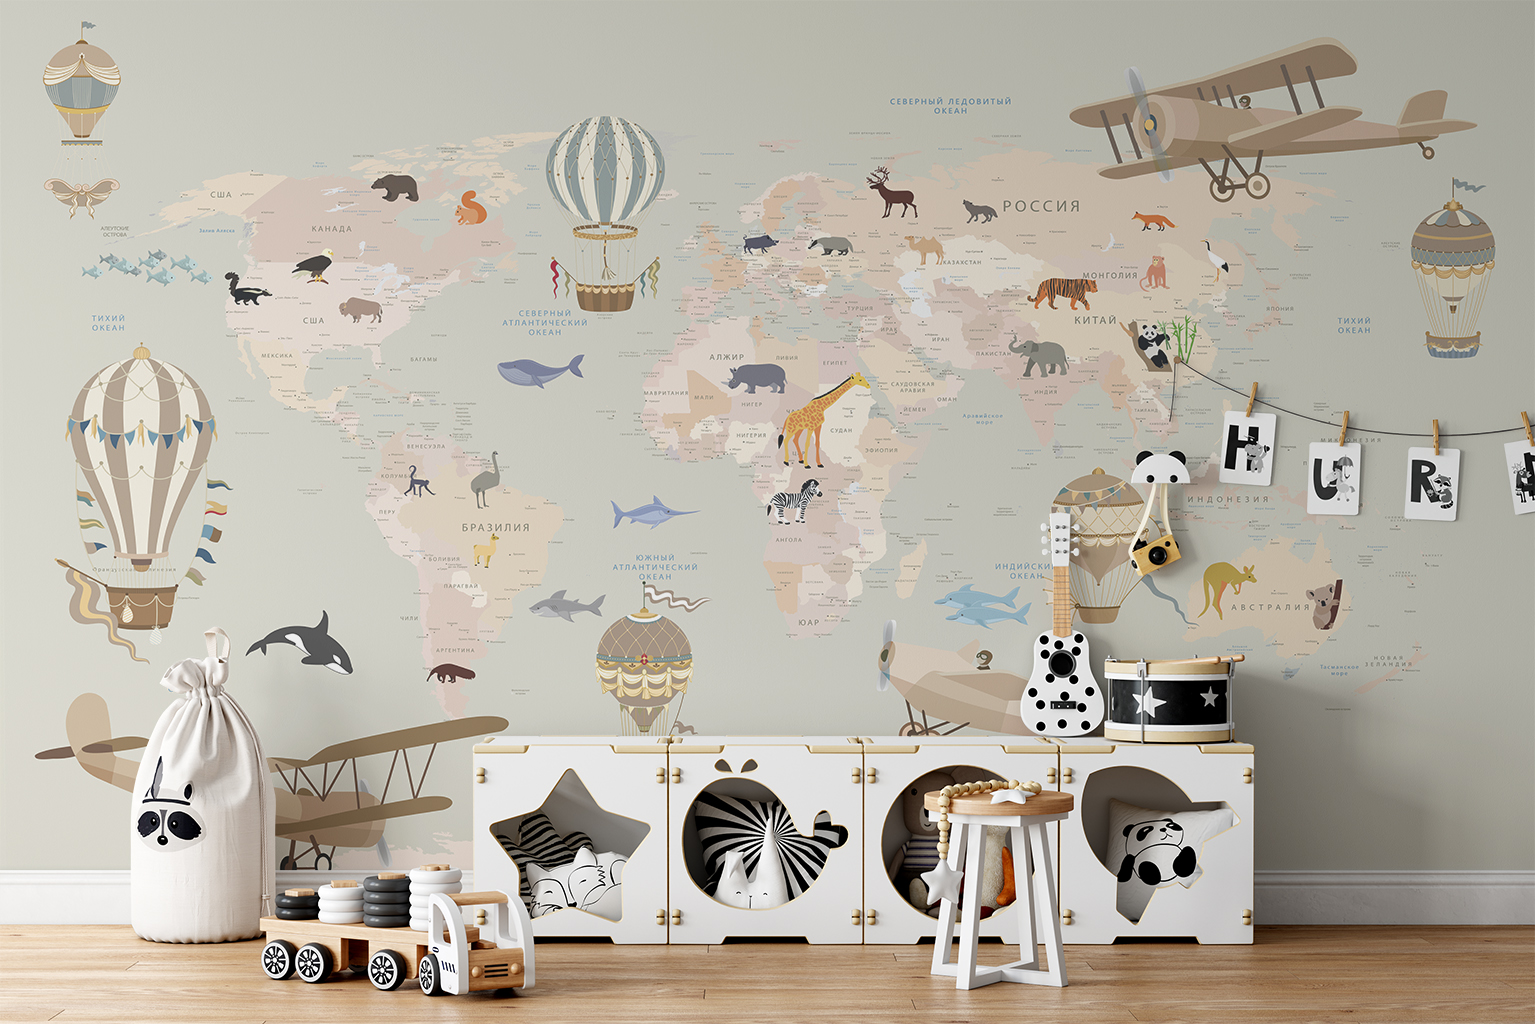 Фотообои Photostena Карта мира на русском с животными 4,5 x 2,7 м подарочная карта твой дом номинал 2000